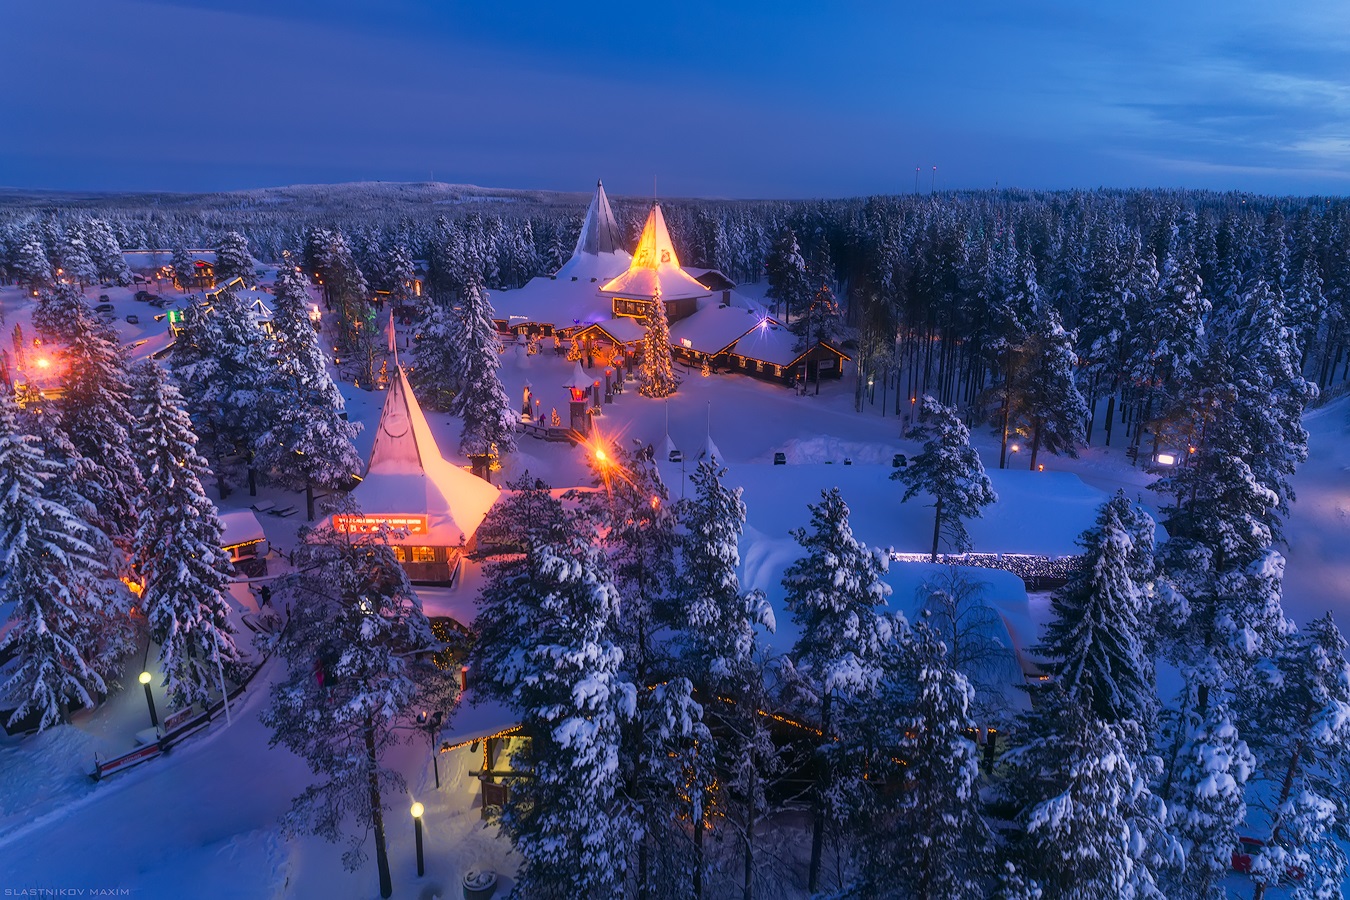 El pueblo mágico de Santa Claus, Rovaniemi, Finlandia